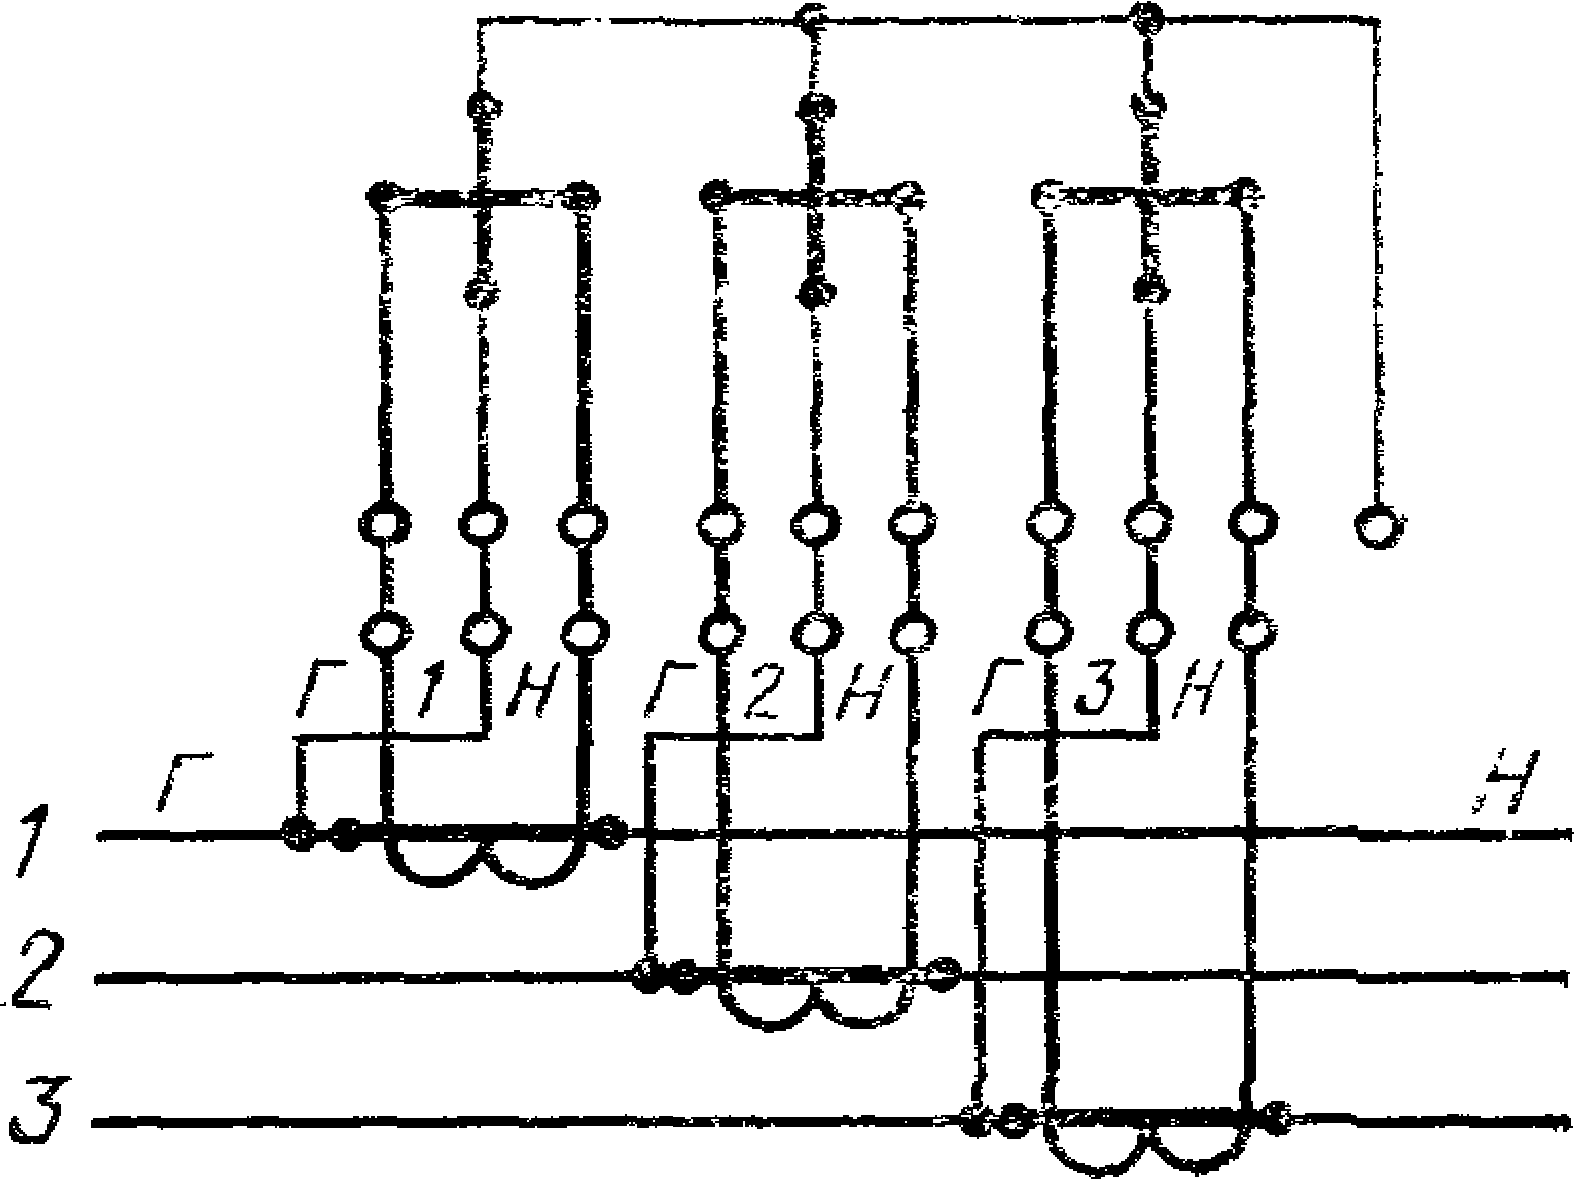 Трехфазные счетчики через трансформаторы тока. Схема подключения счетчика через трансформаторы тока 0.4кв. Схема расключения трансформаторов тока и счетчика. Схема подключения электросчетчика через трансформаторы тока. Схема подключения трехфазного счетчика через трансформаторы тока.